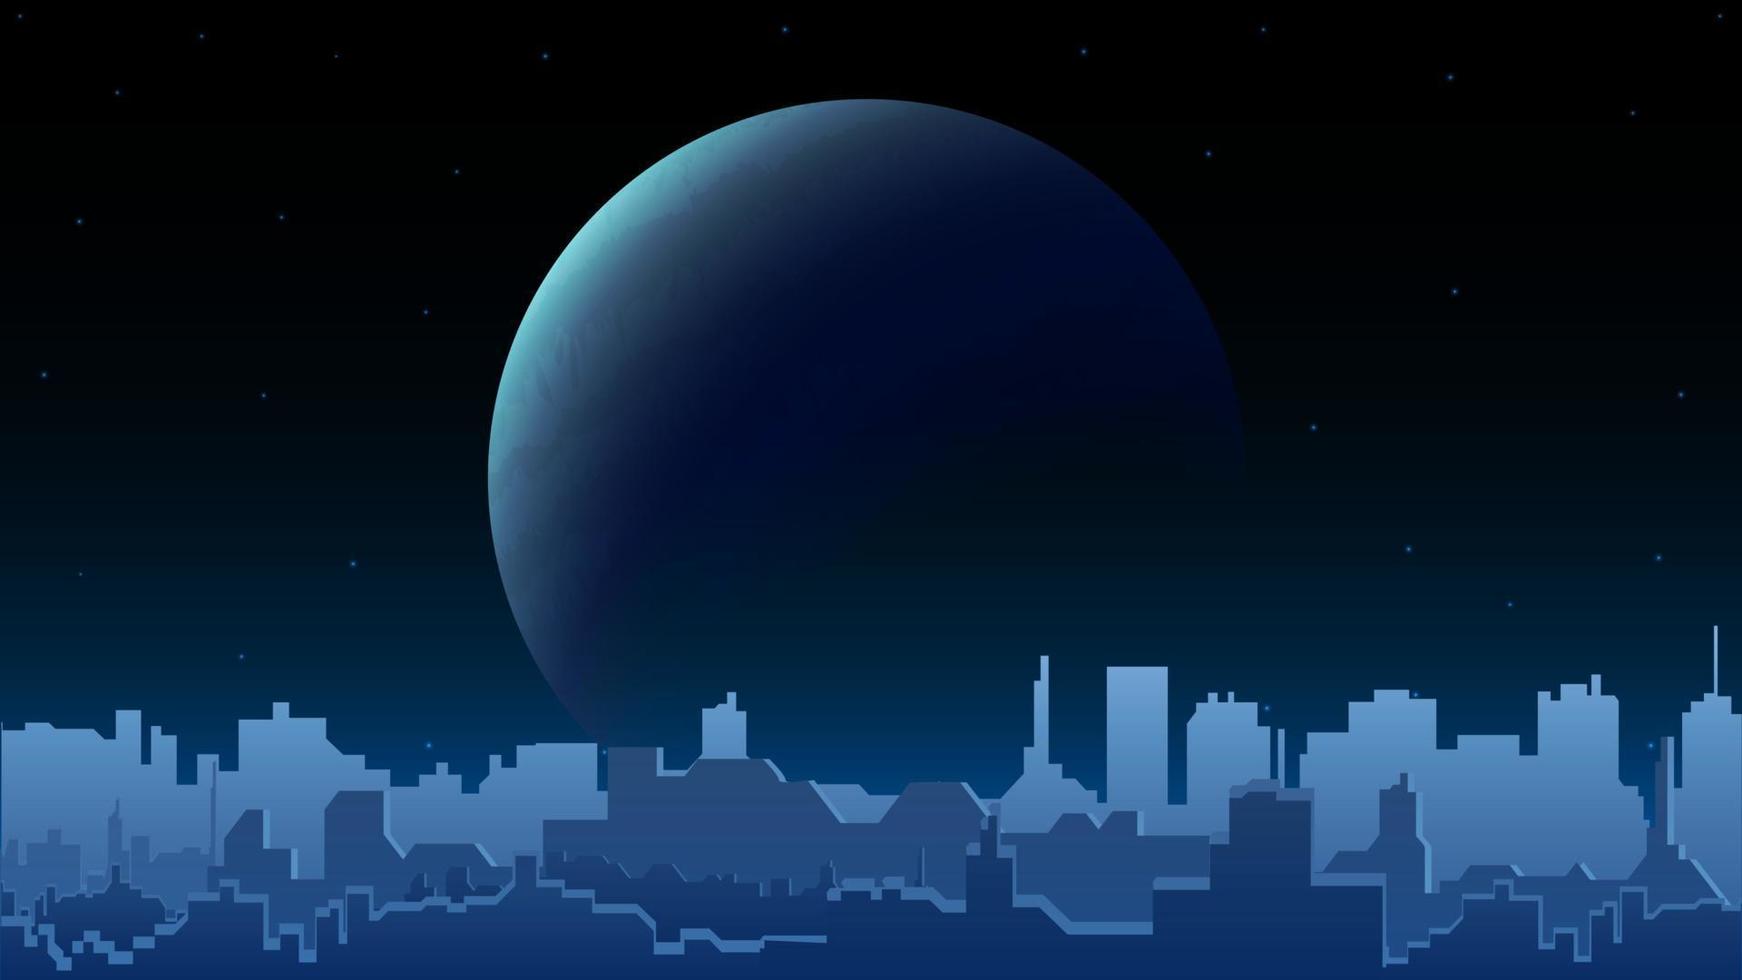 nacht stadslandschap met een grote planeet aan de horizon en het silhouet van een moderne stad met hoogbouw. blauwe nacht stadslandschap vector